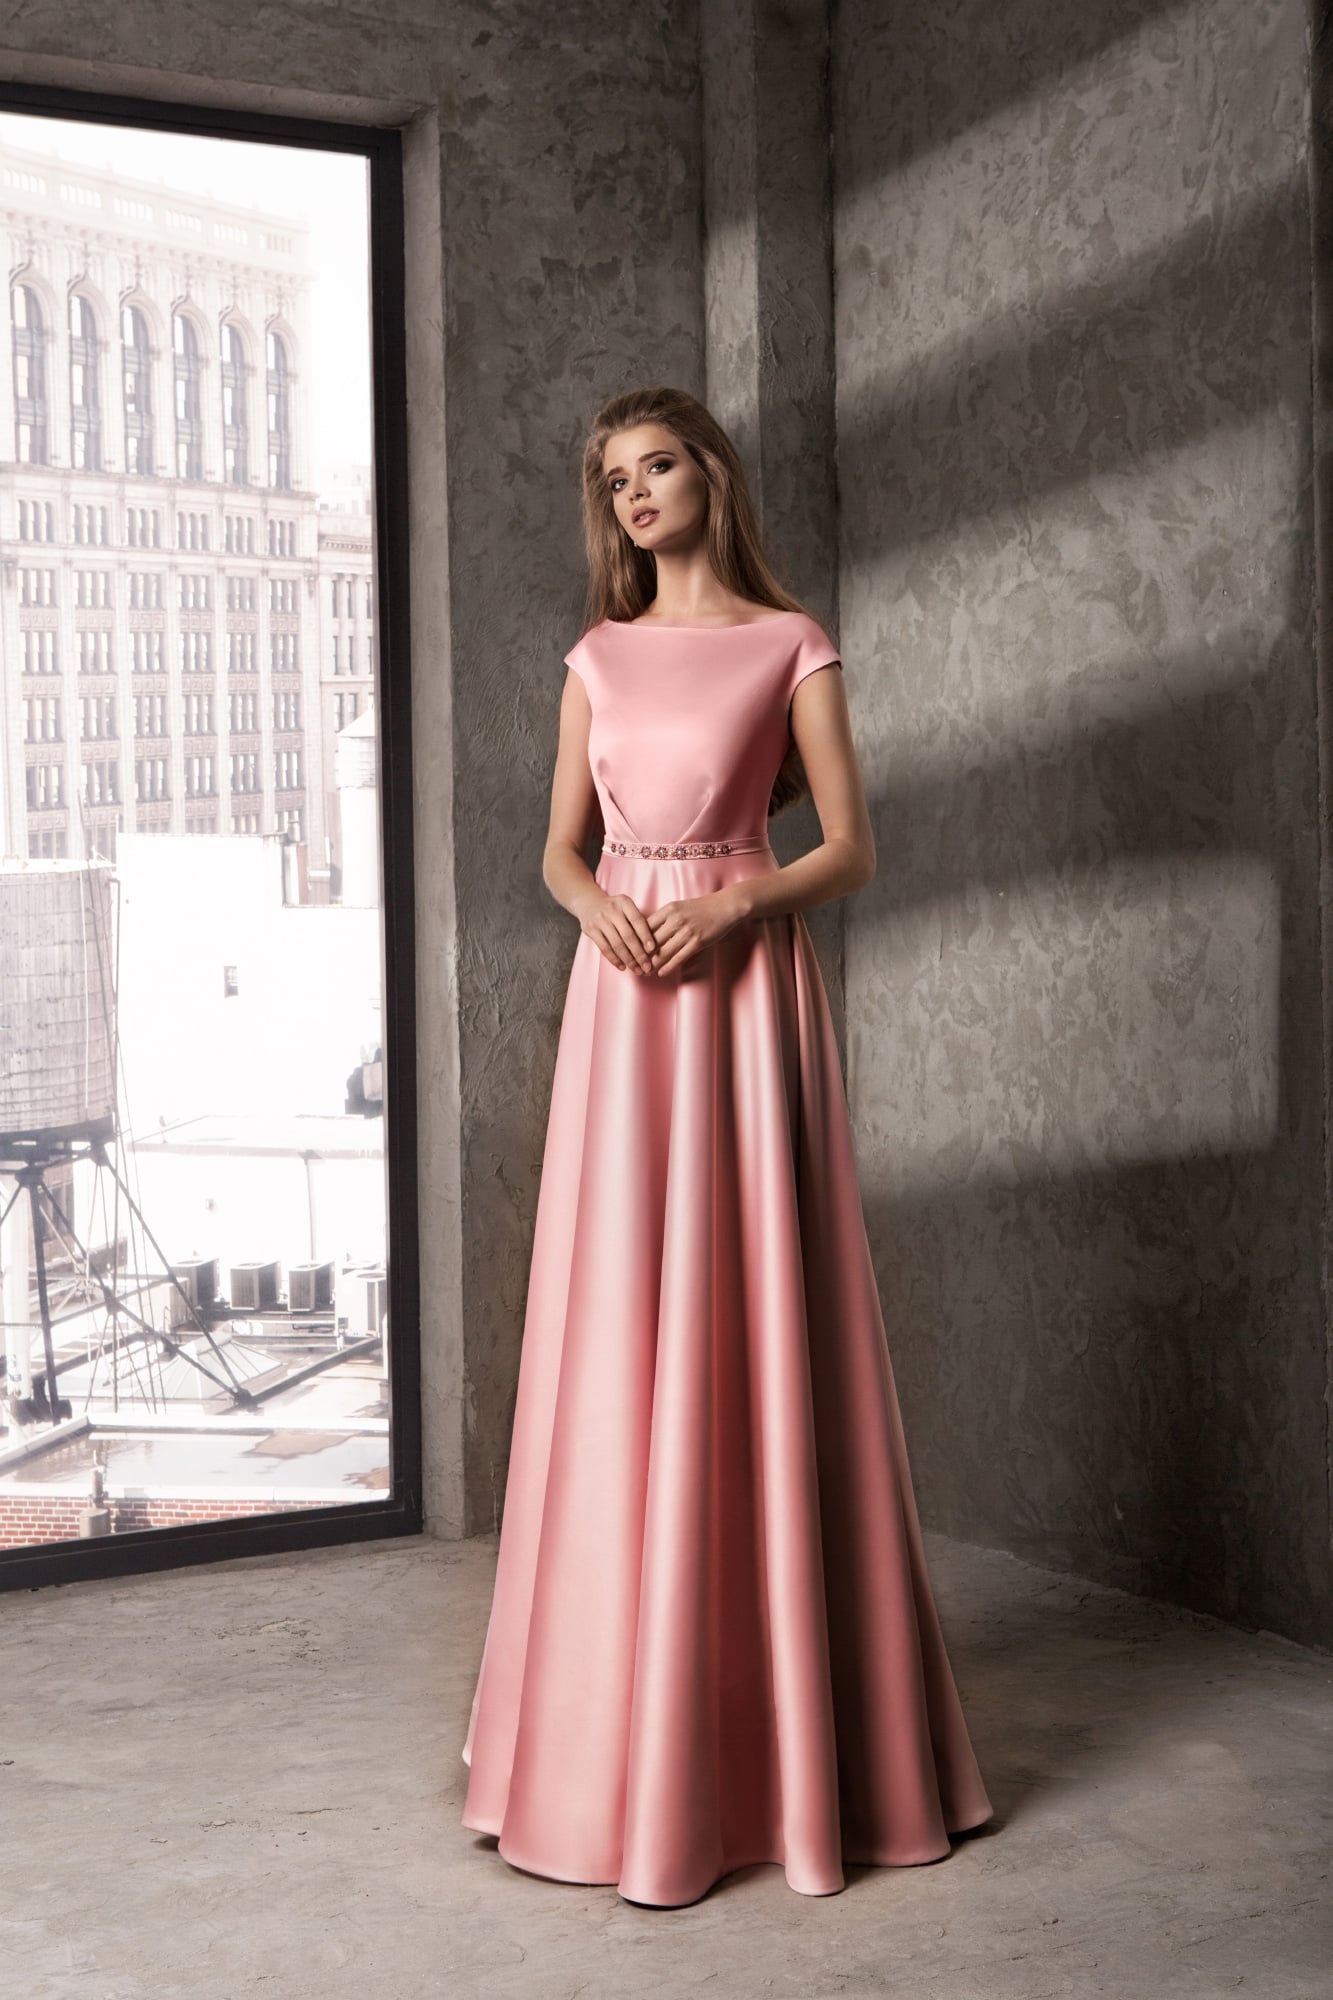 Закрытое вечернее платье прямого кроя из глянцевого розового атласа